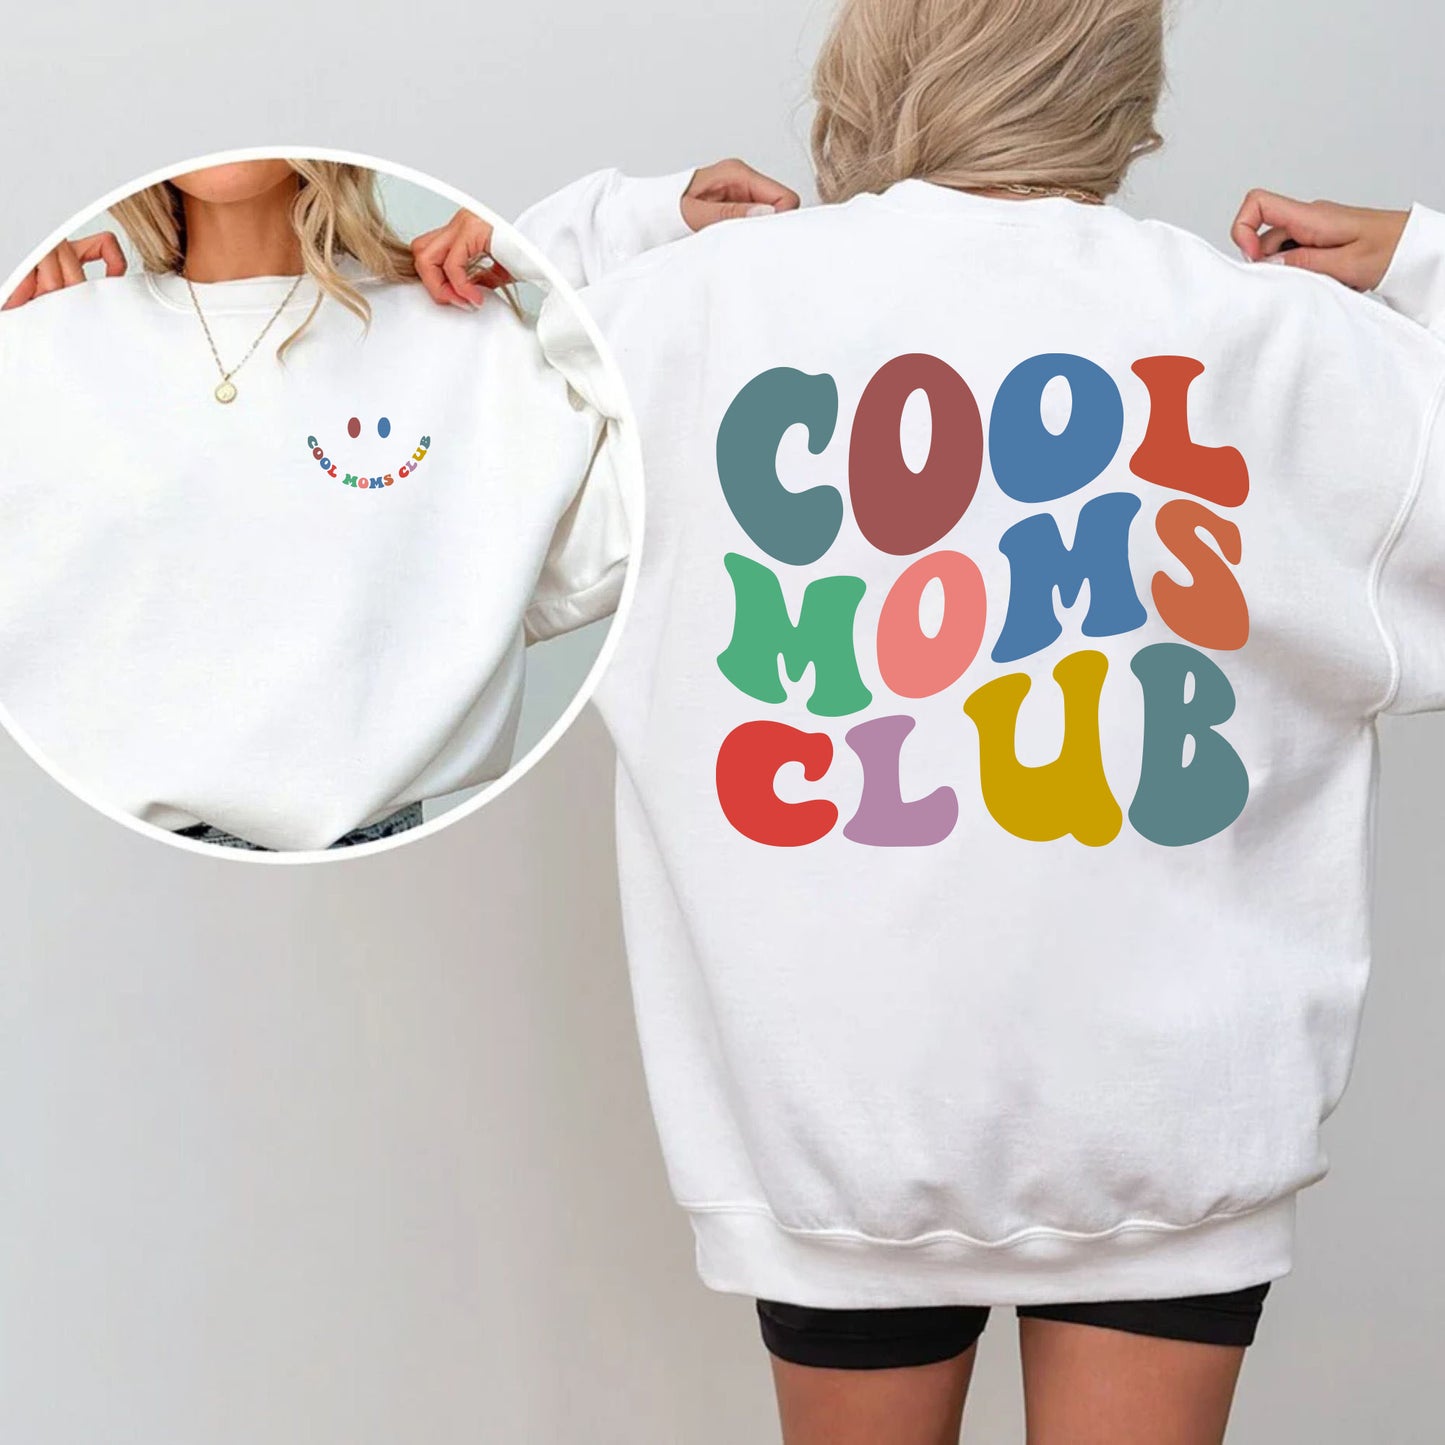 Cool Moms Club Shirt - Cool Mom Sweatshirt